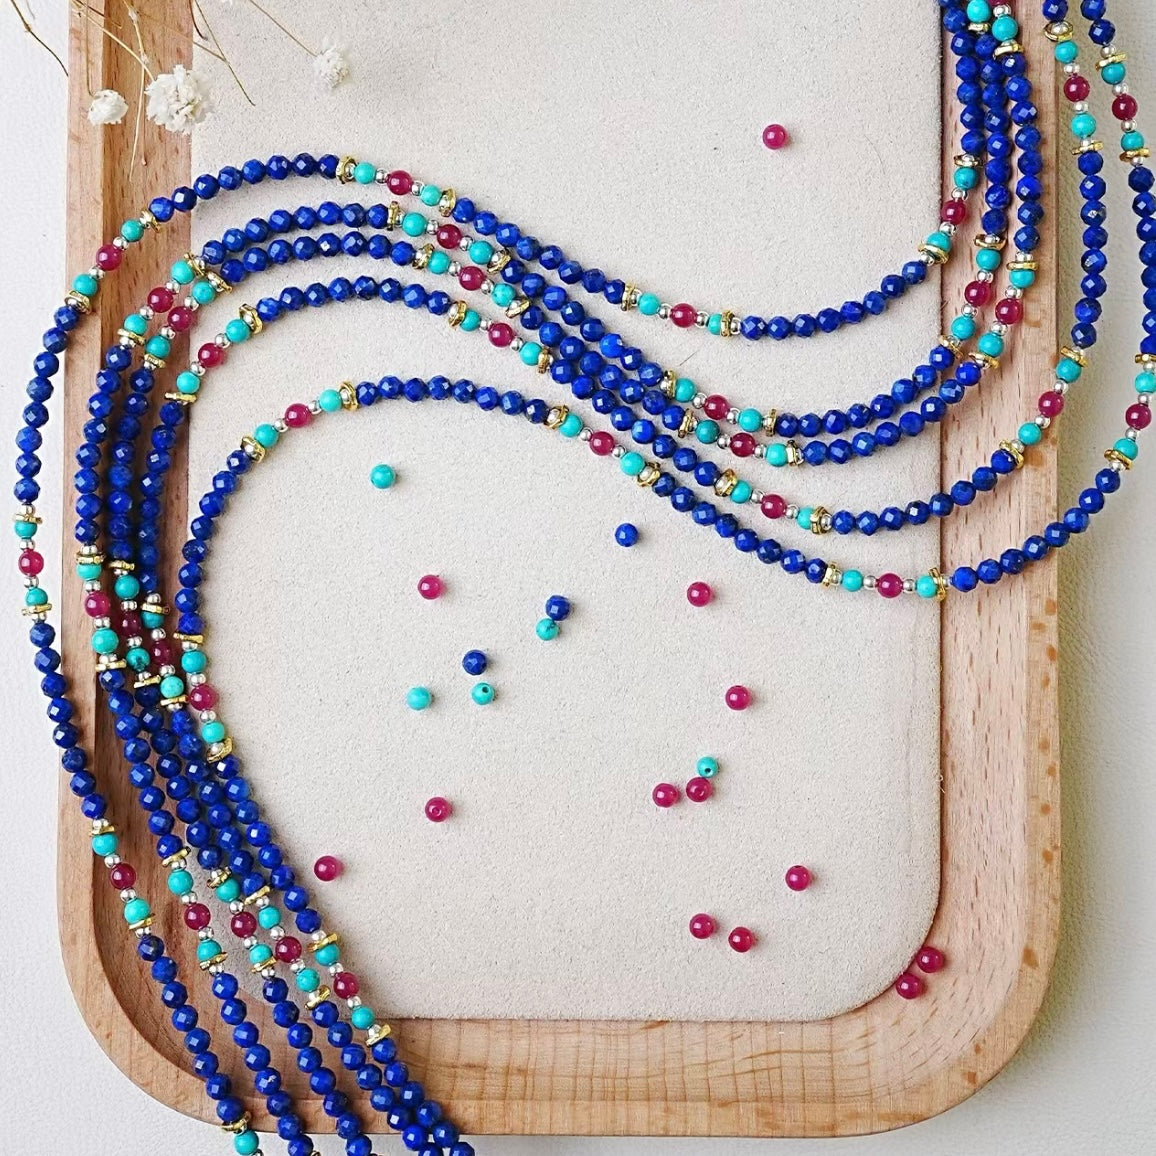 Chinese style lapis lazuli beaded necklace.